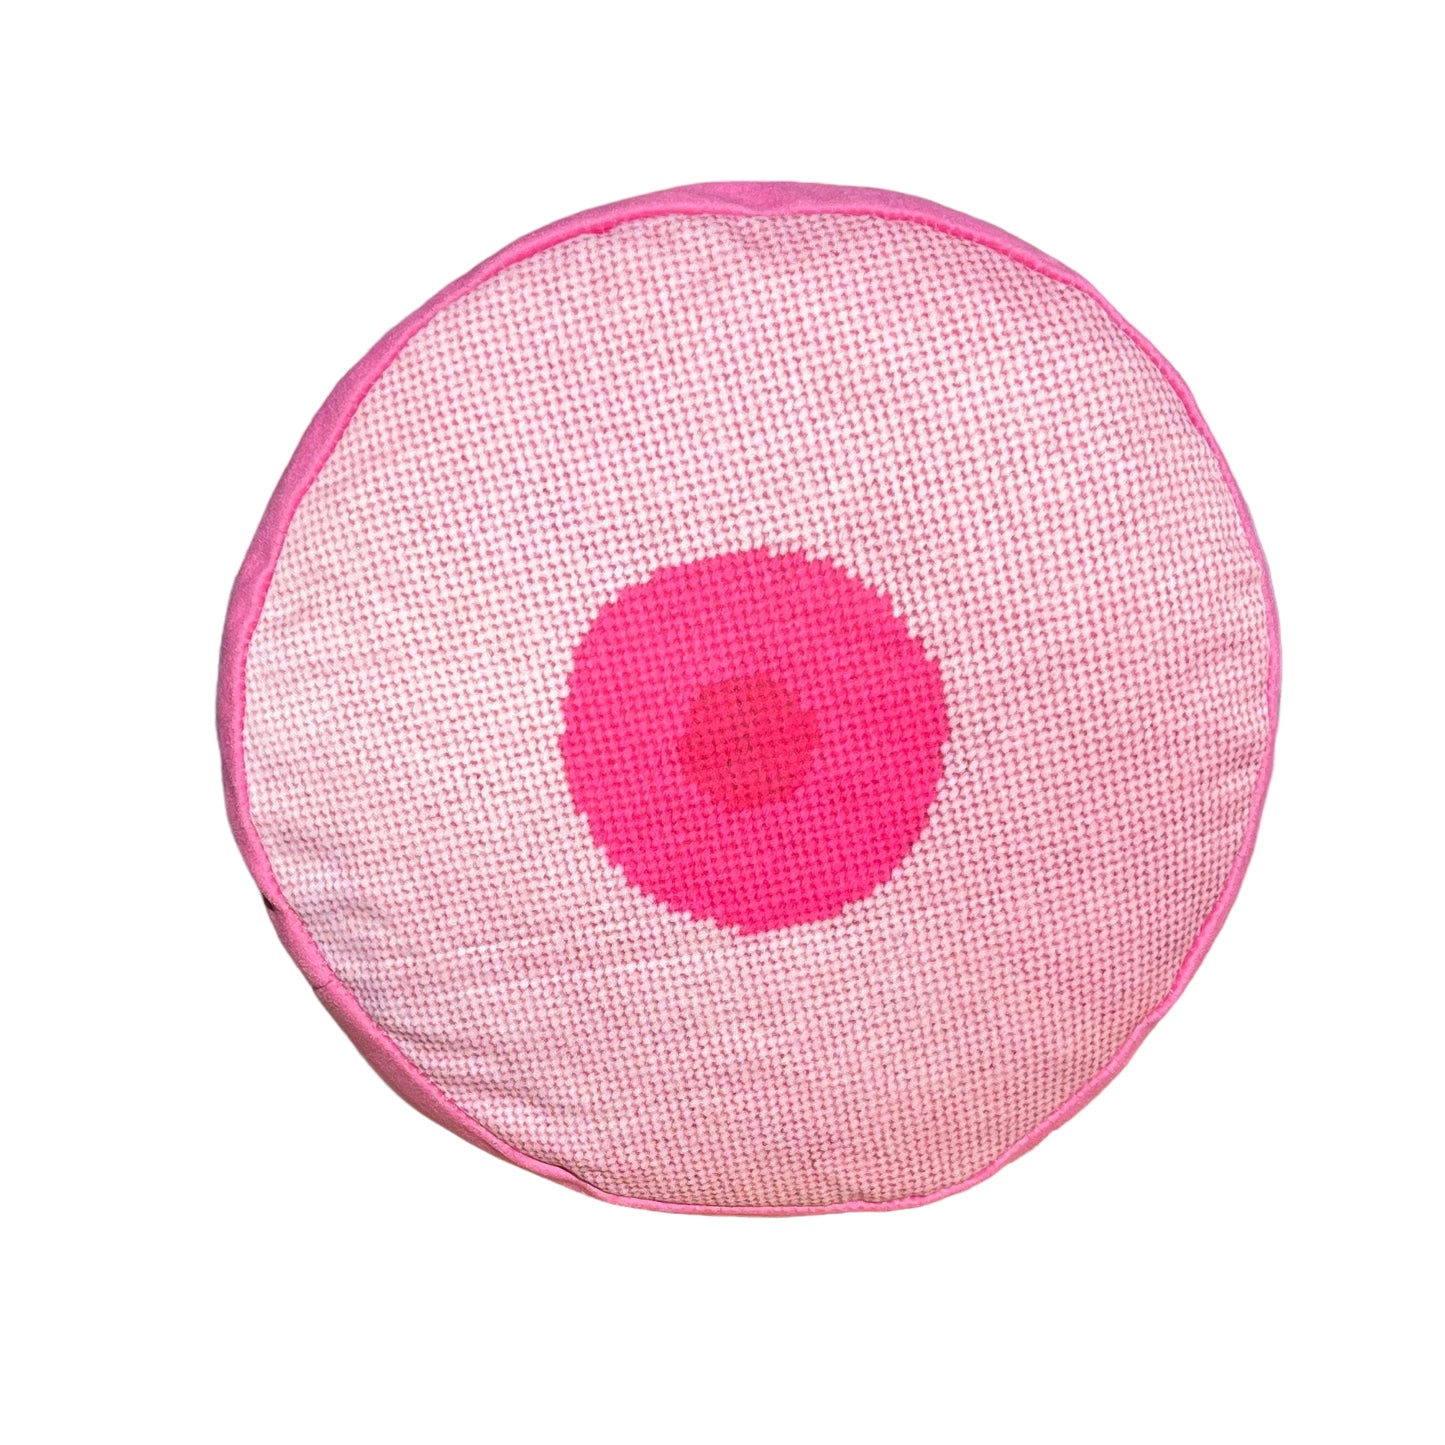 velvet GIRL pink boob pillow